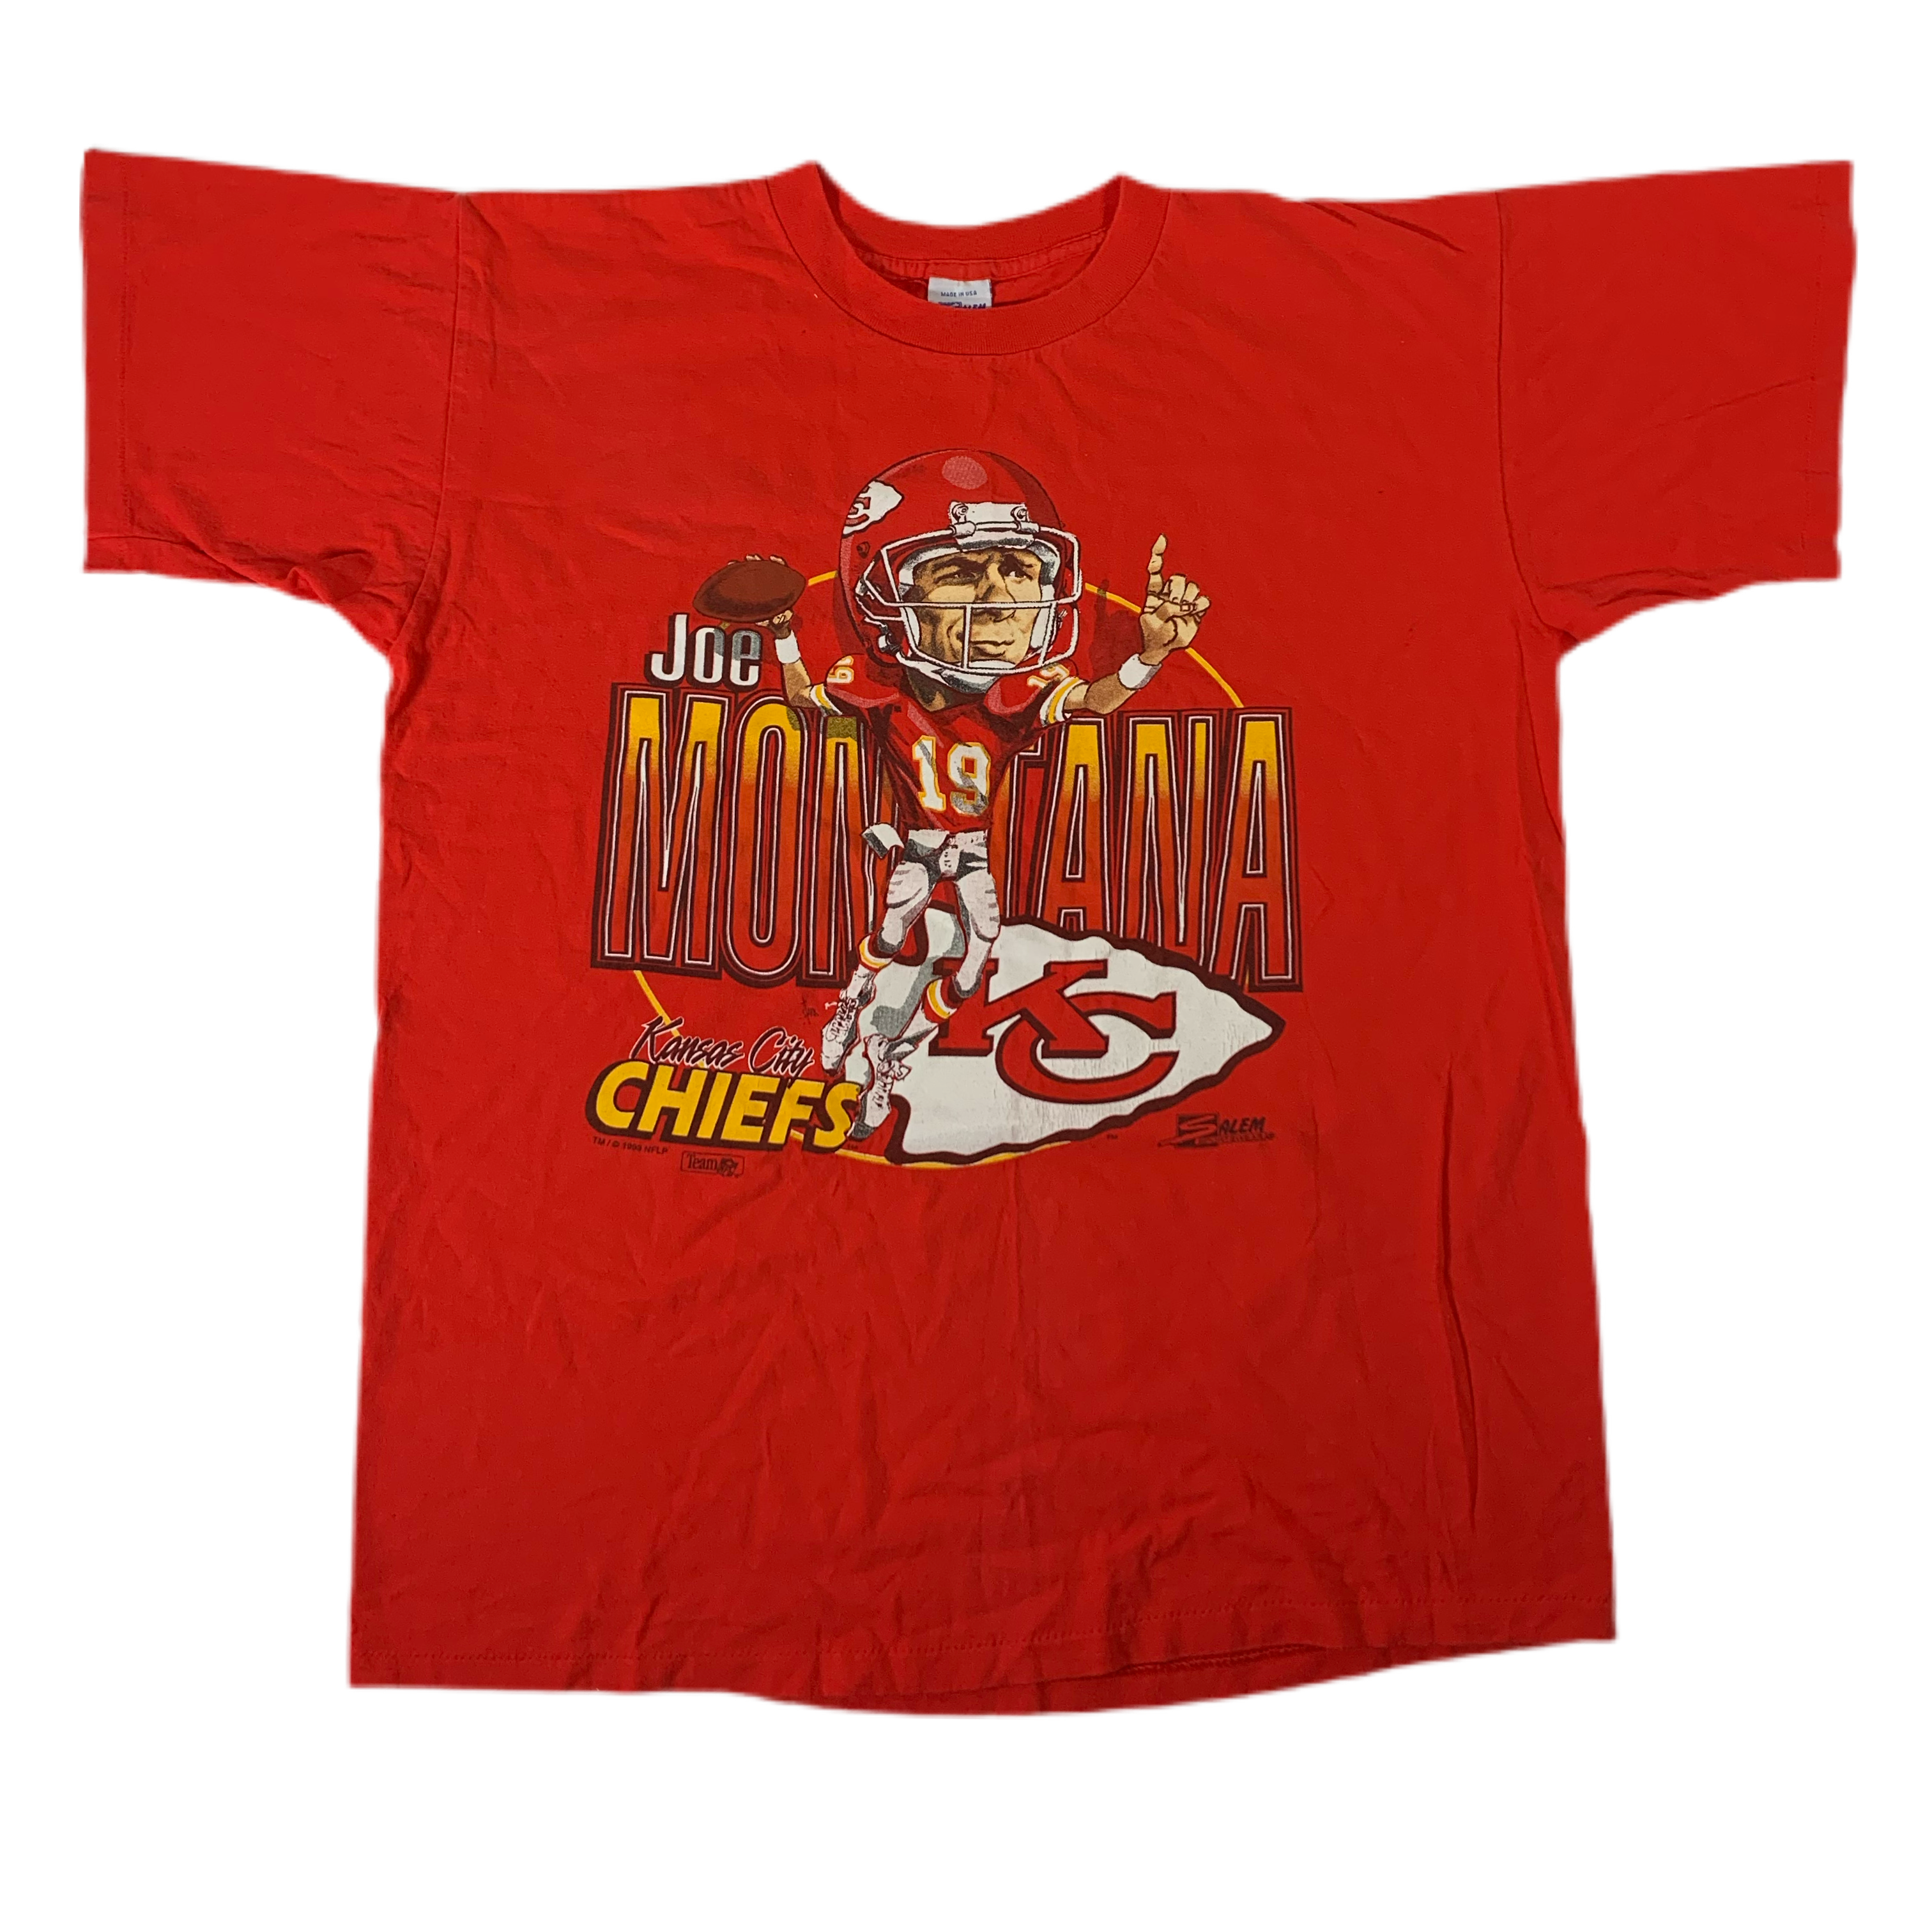 cool chiefs shirt